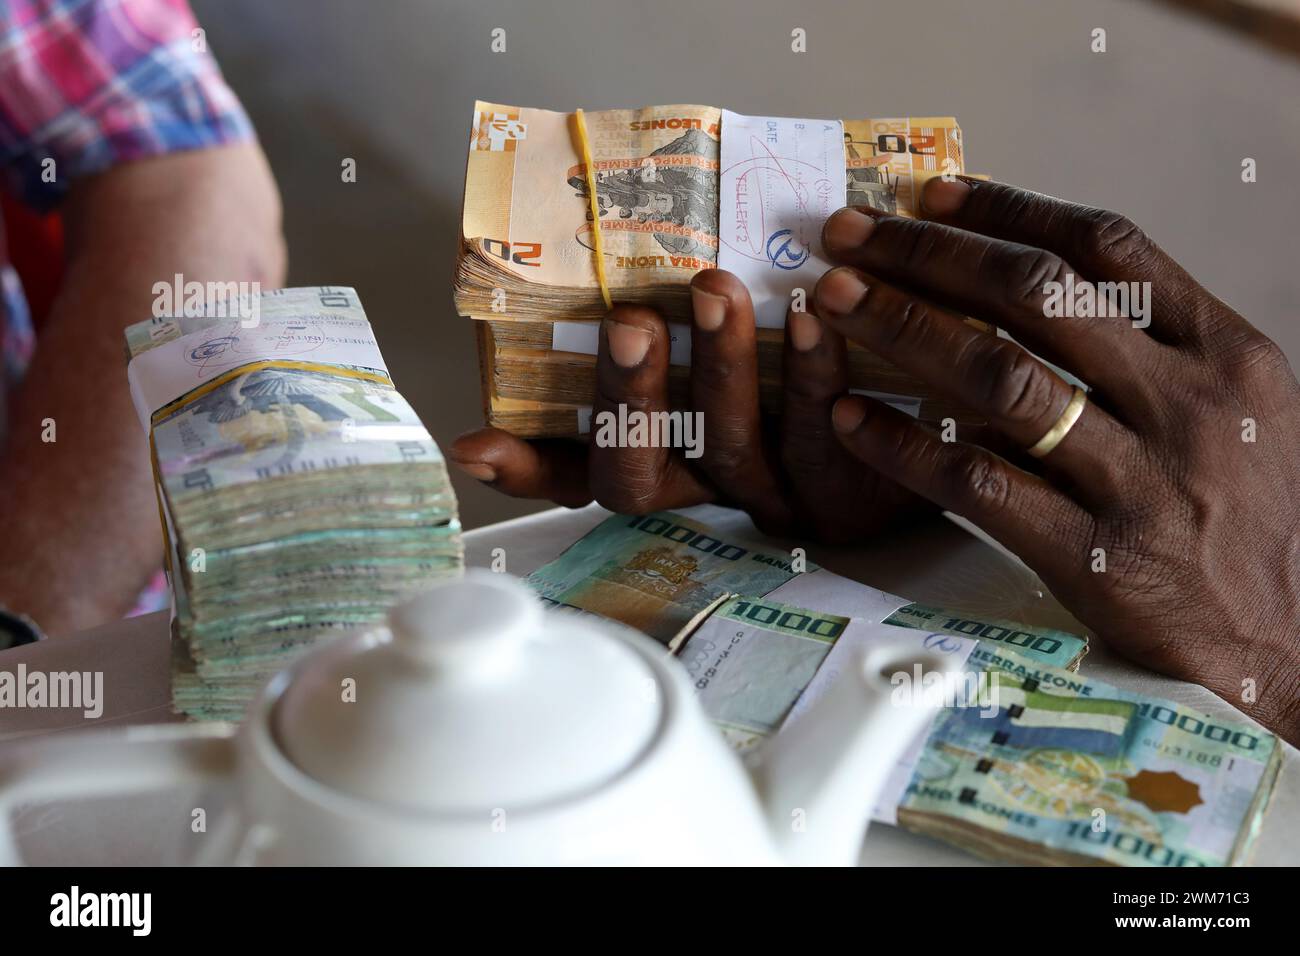 Allgemeine Ansichten über Bündel von Leone-Banknoten, die Währung von Sierra Leone. Abgebildet in Freetown, Sierra Leone, Afrika. Stockfoto